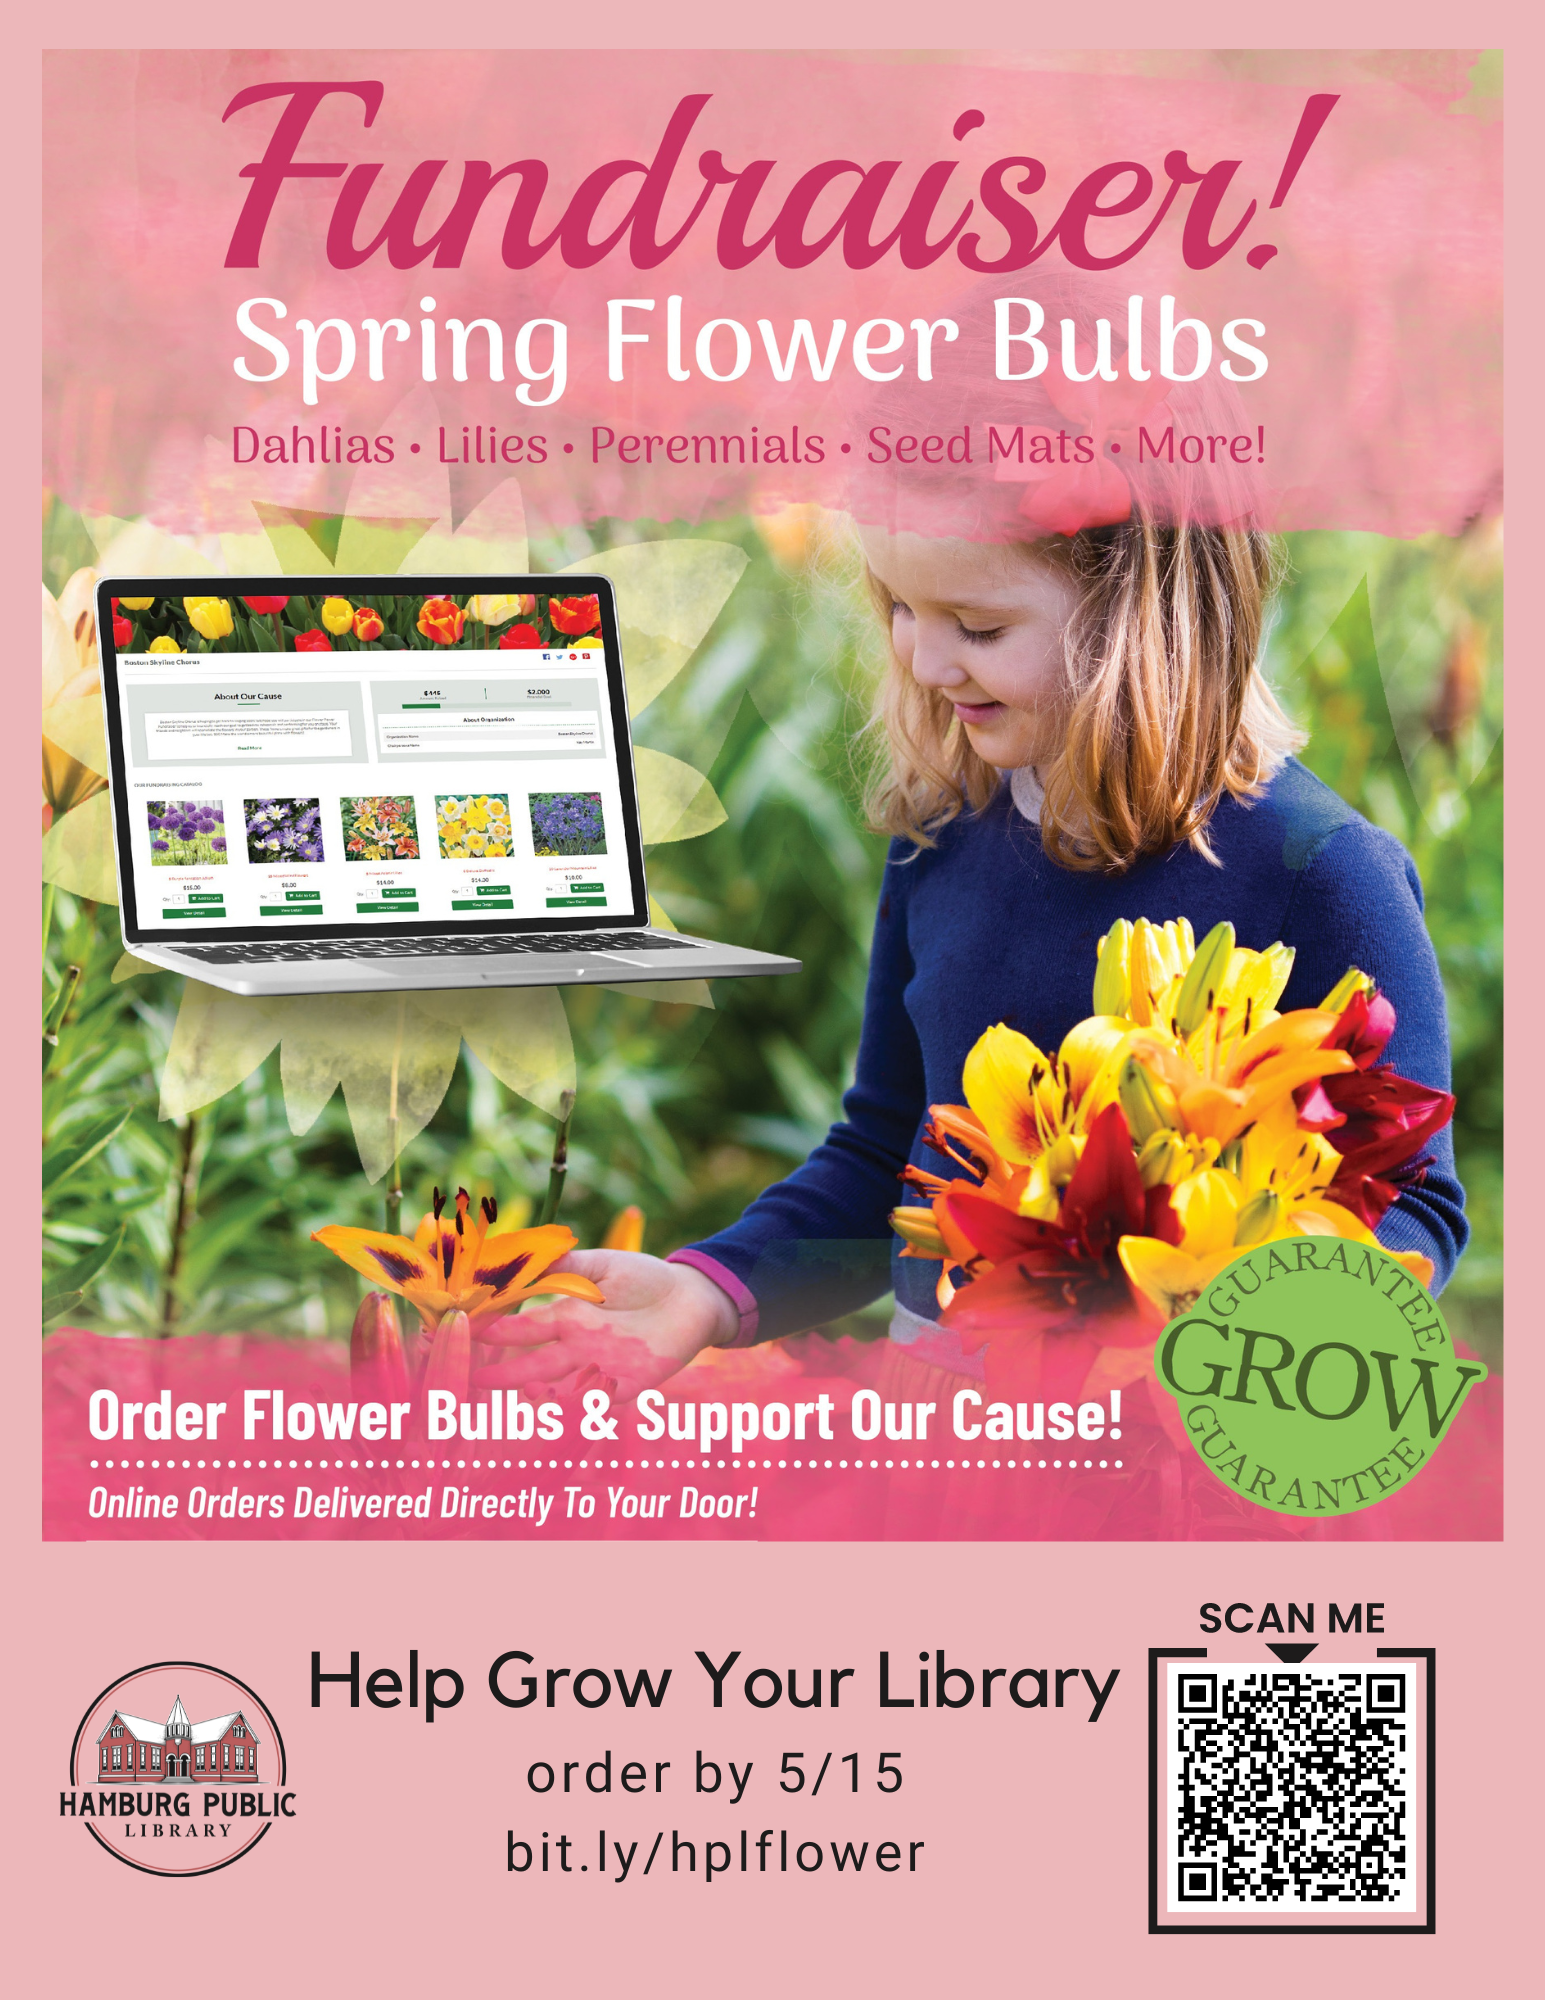 Fundraiser! Spring Flower Bulbs